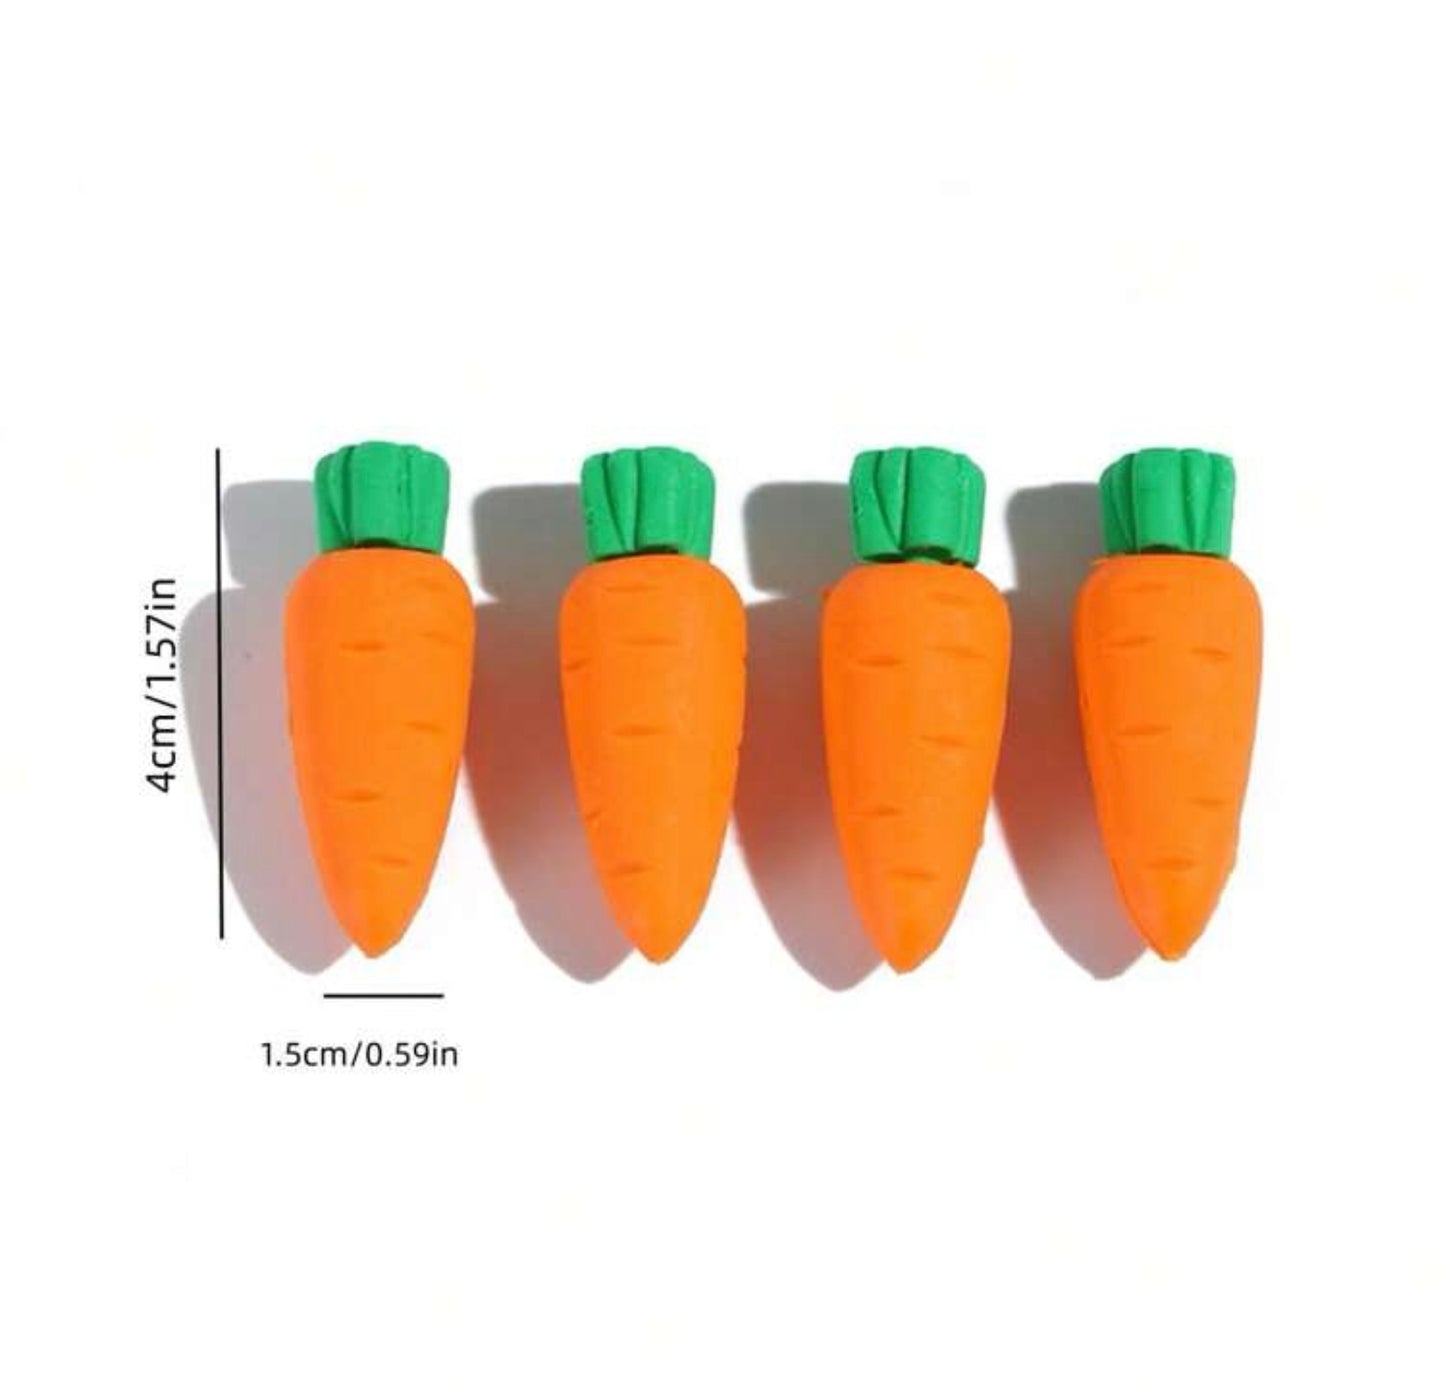 Carrot Eraser